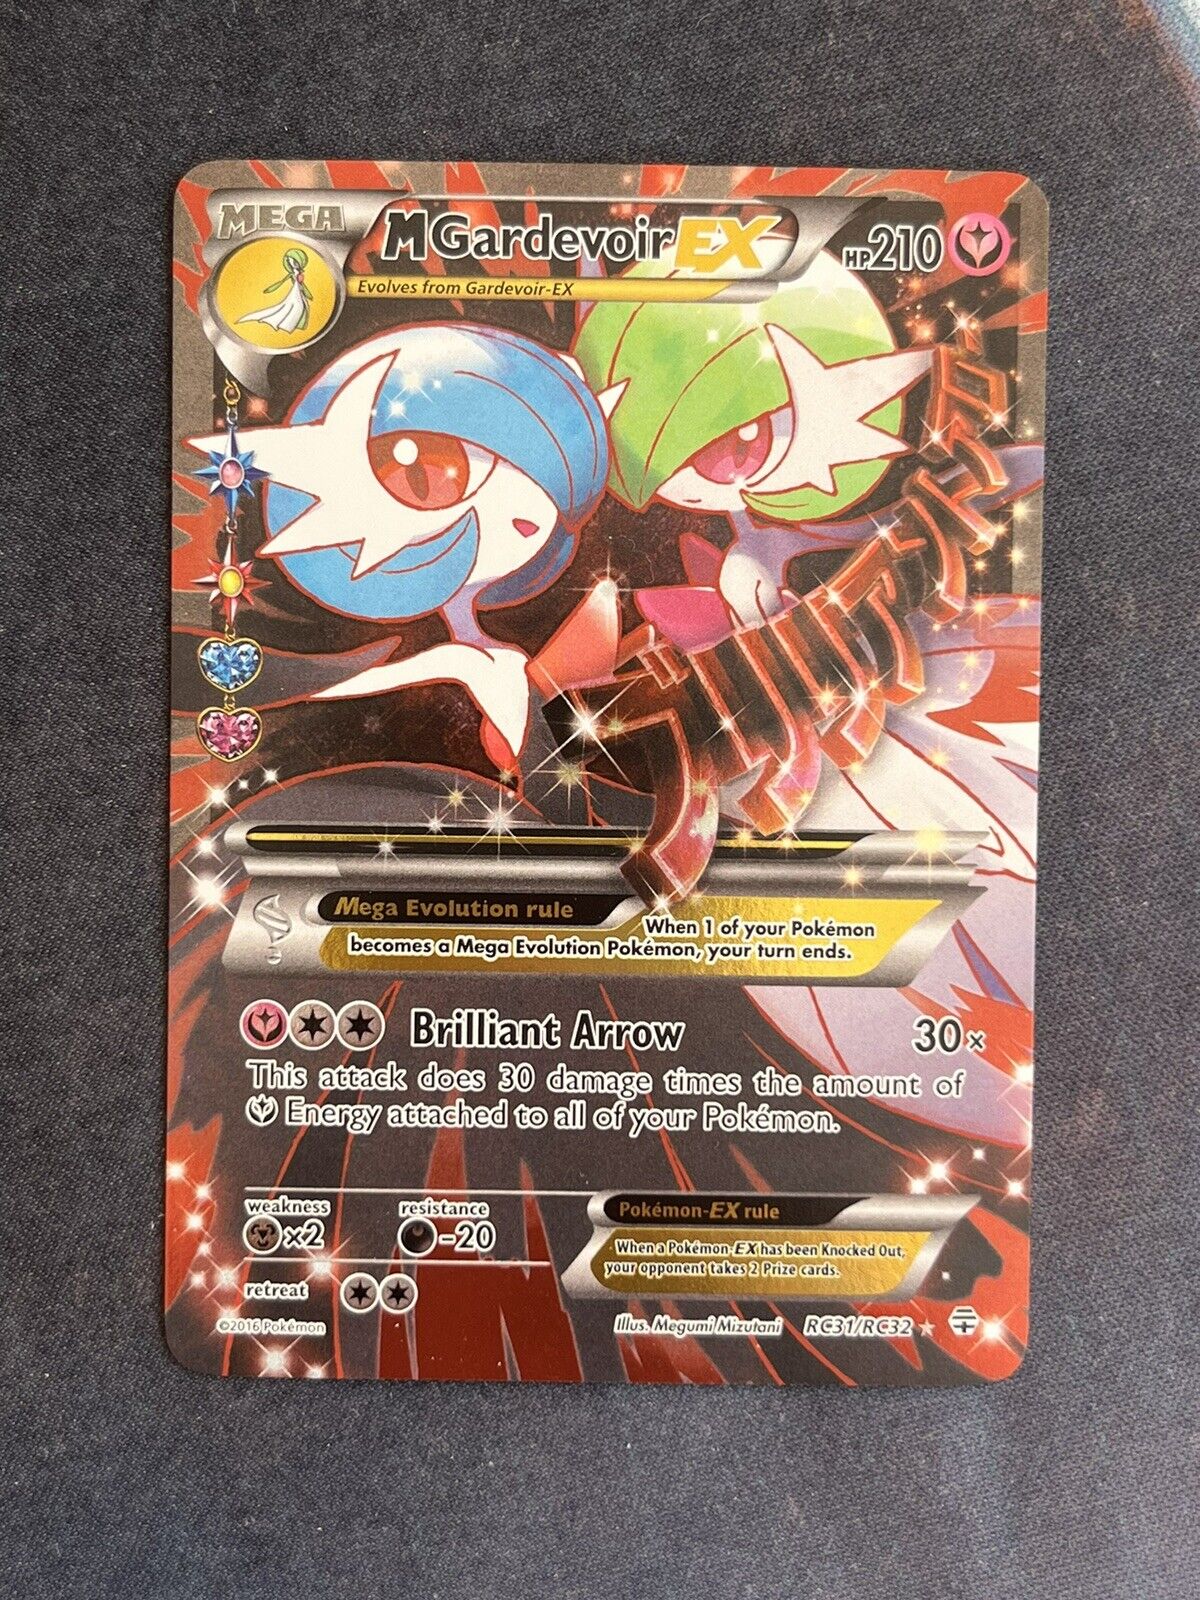 Pokémon TCG Mega-Gardevoir-EX Generations RC31 Holo Full Art Ultra